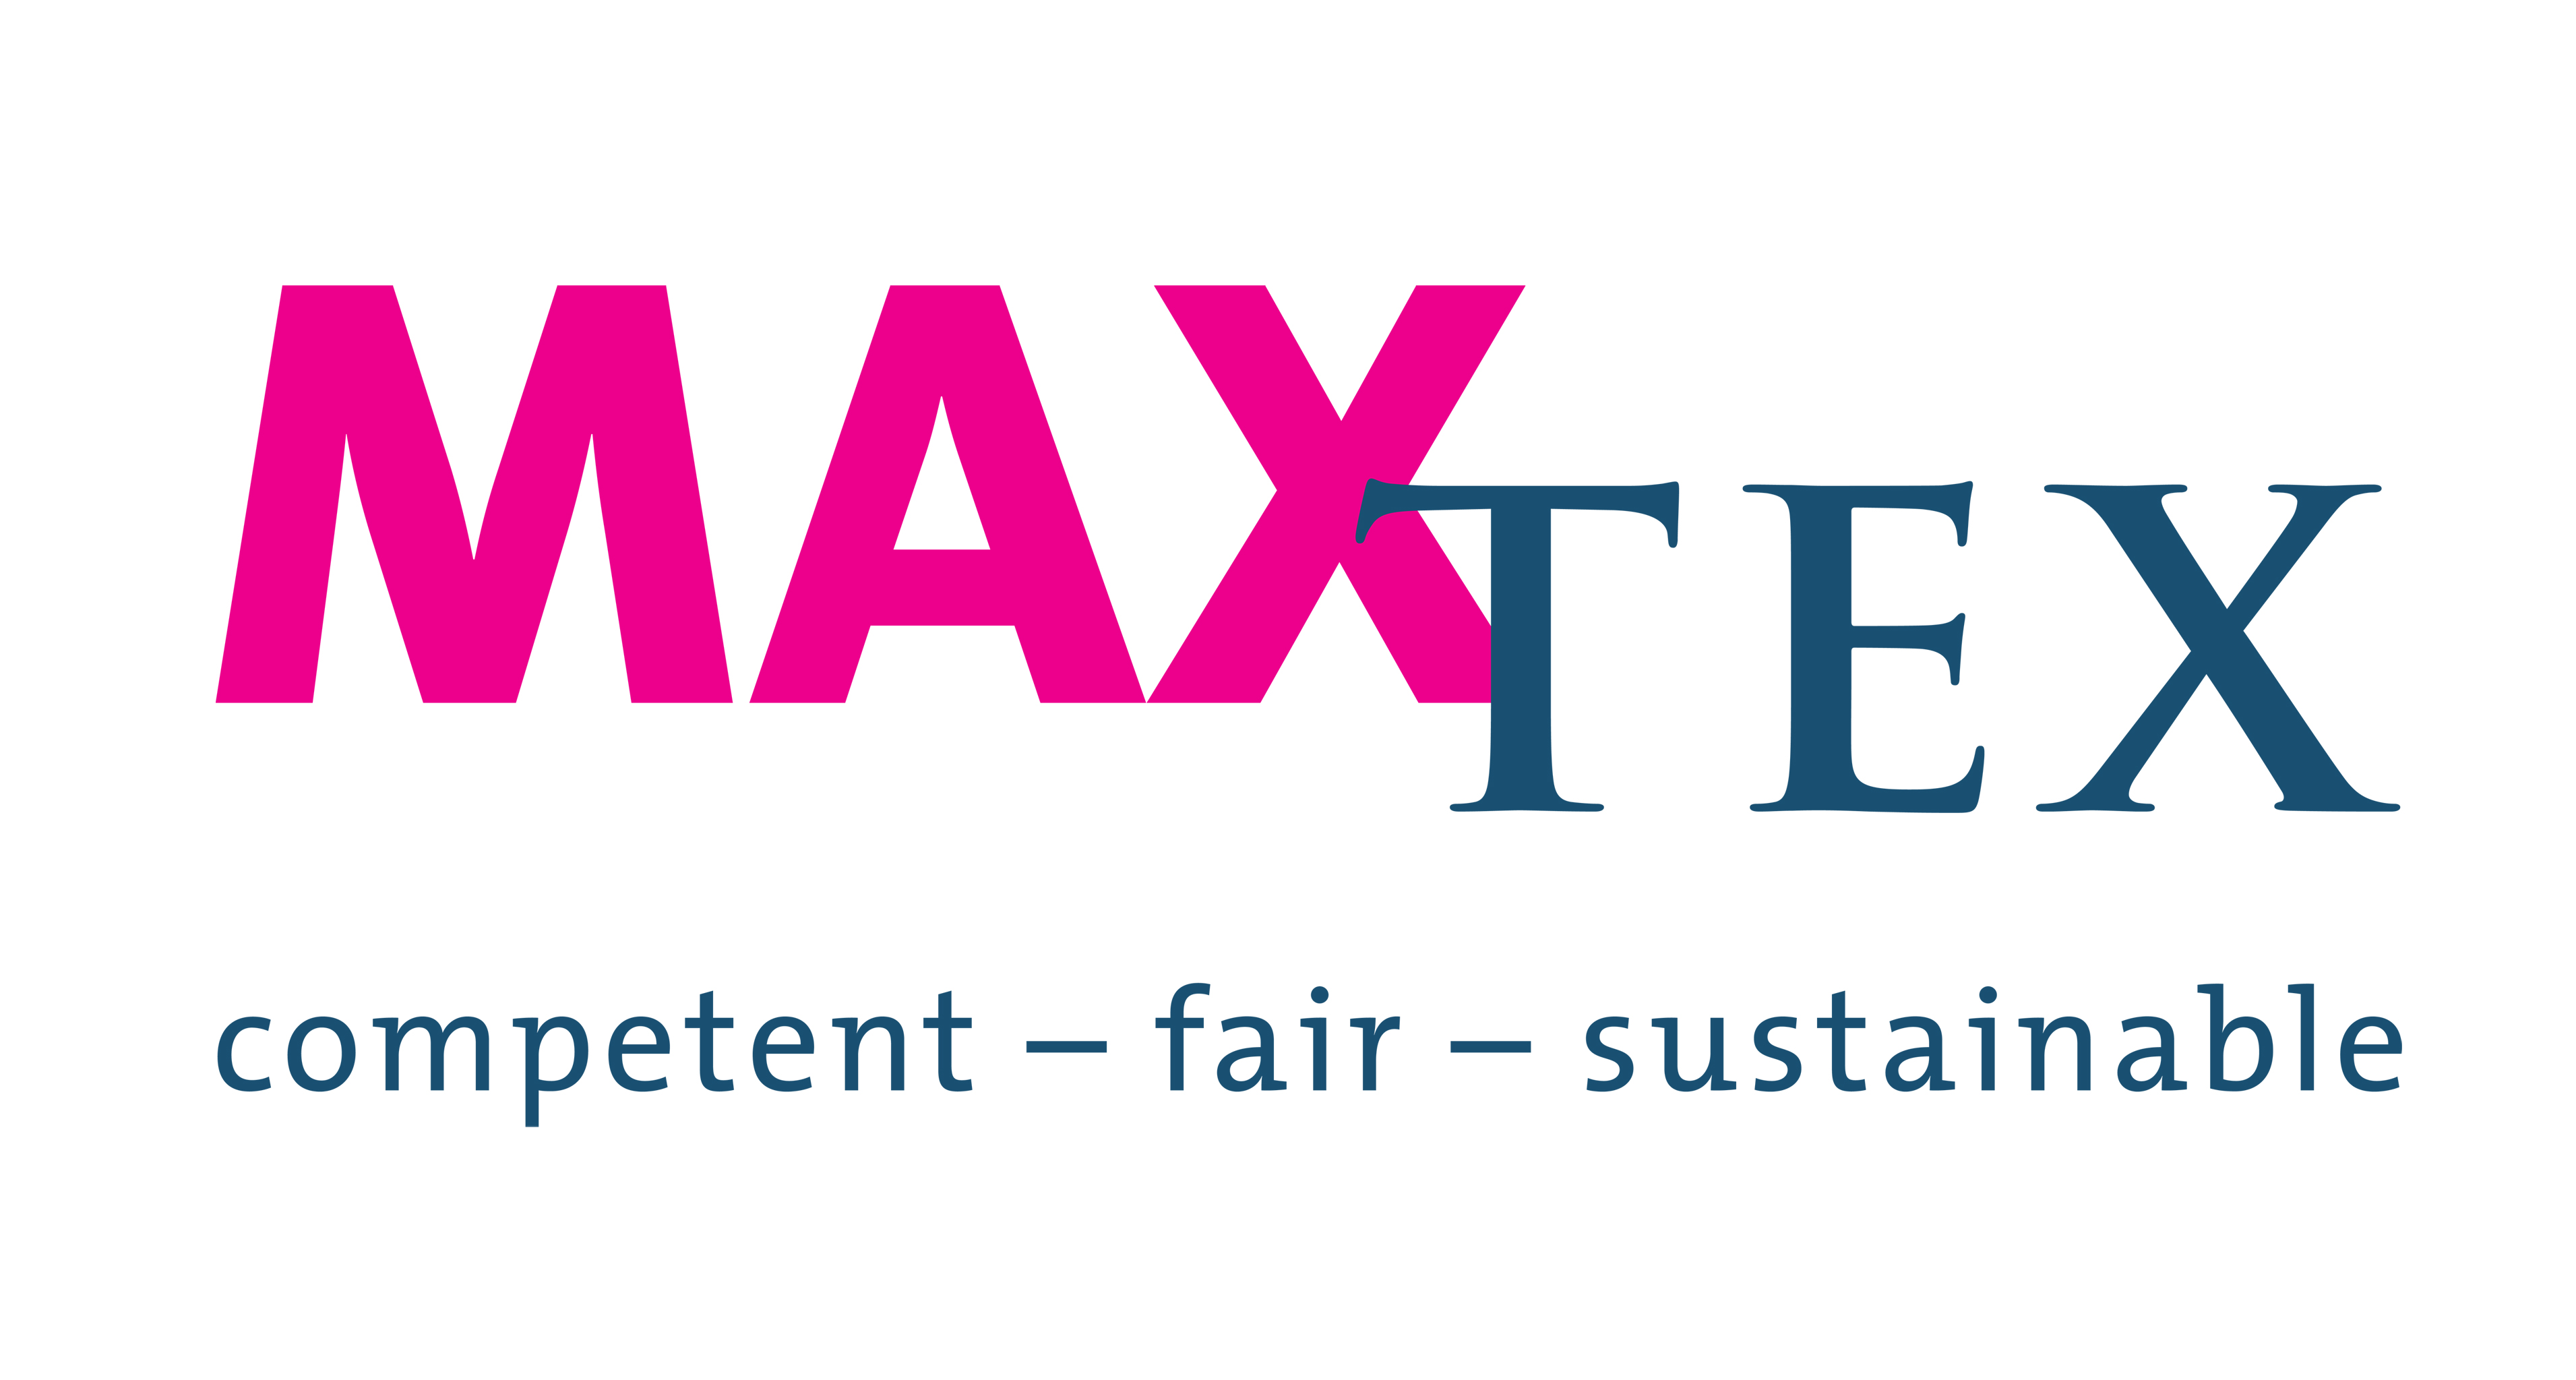 HAVEP ist seit dem 1. Februar Mitglied von Maxtex.